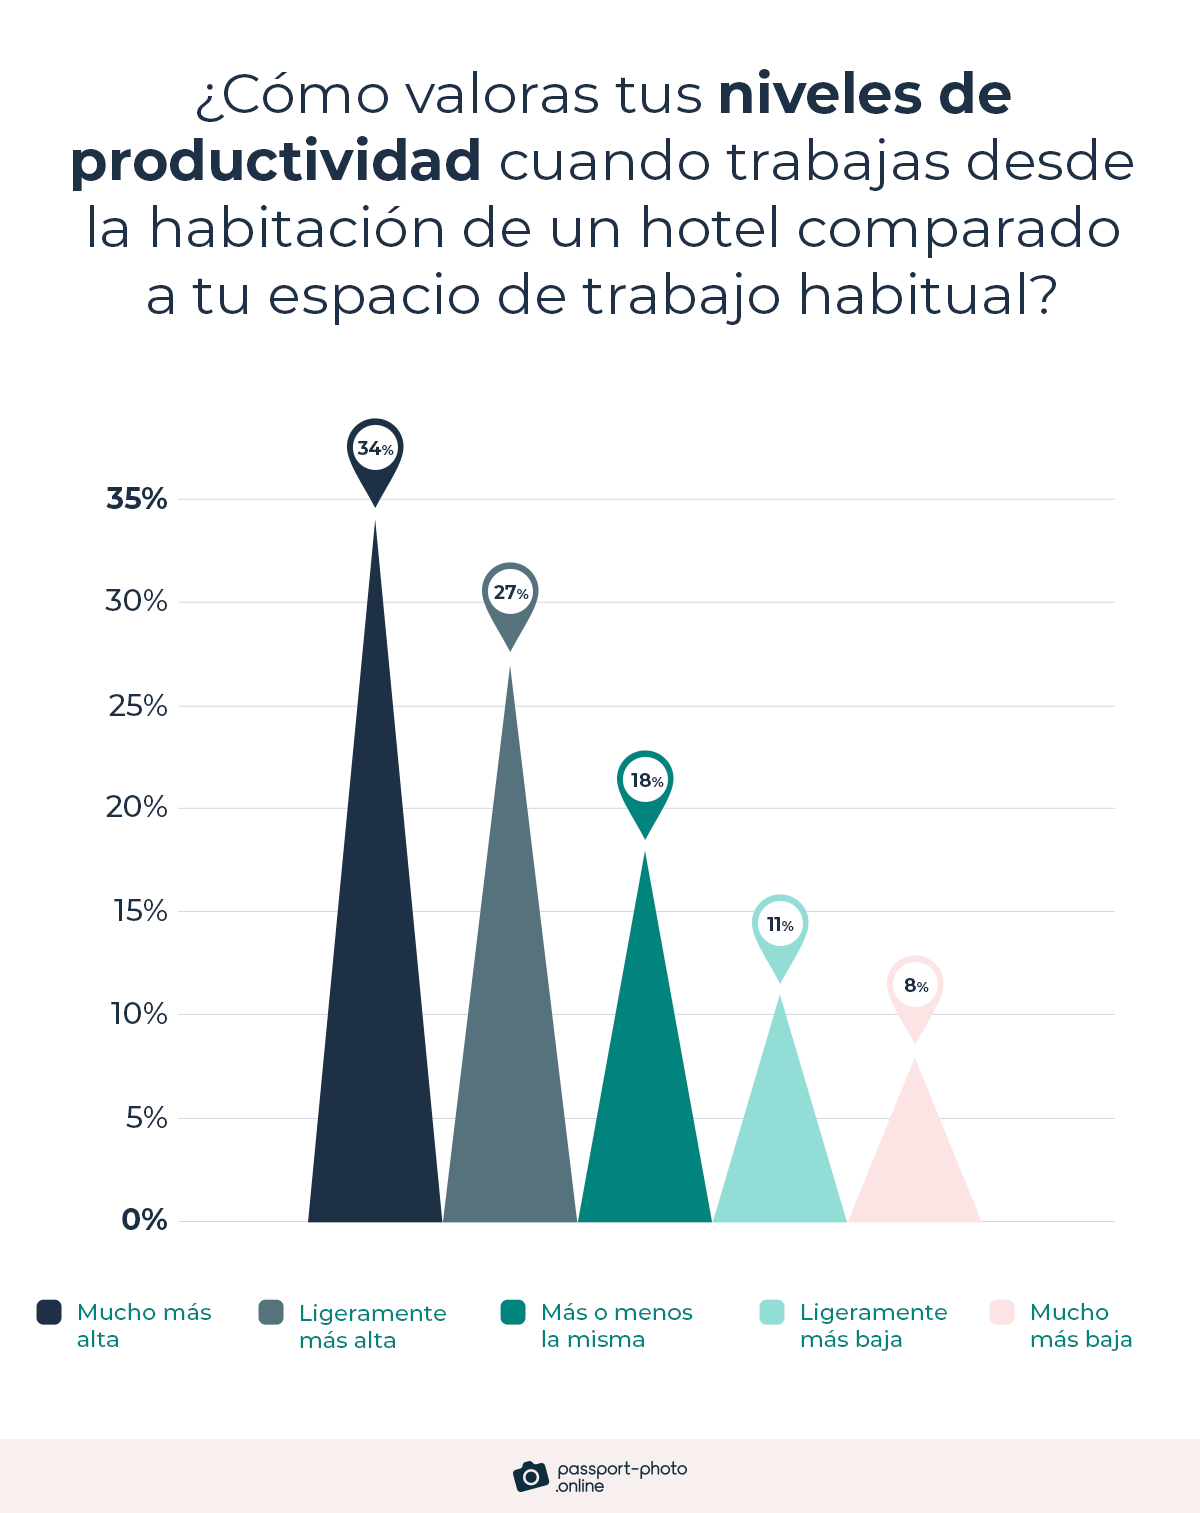 el 61% de los encuestados calificó sus niveles de productividad como ligeramente más altos o mucho más altos al trabajar desde una habitación de hotel